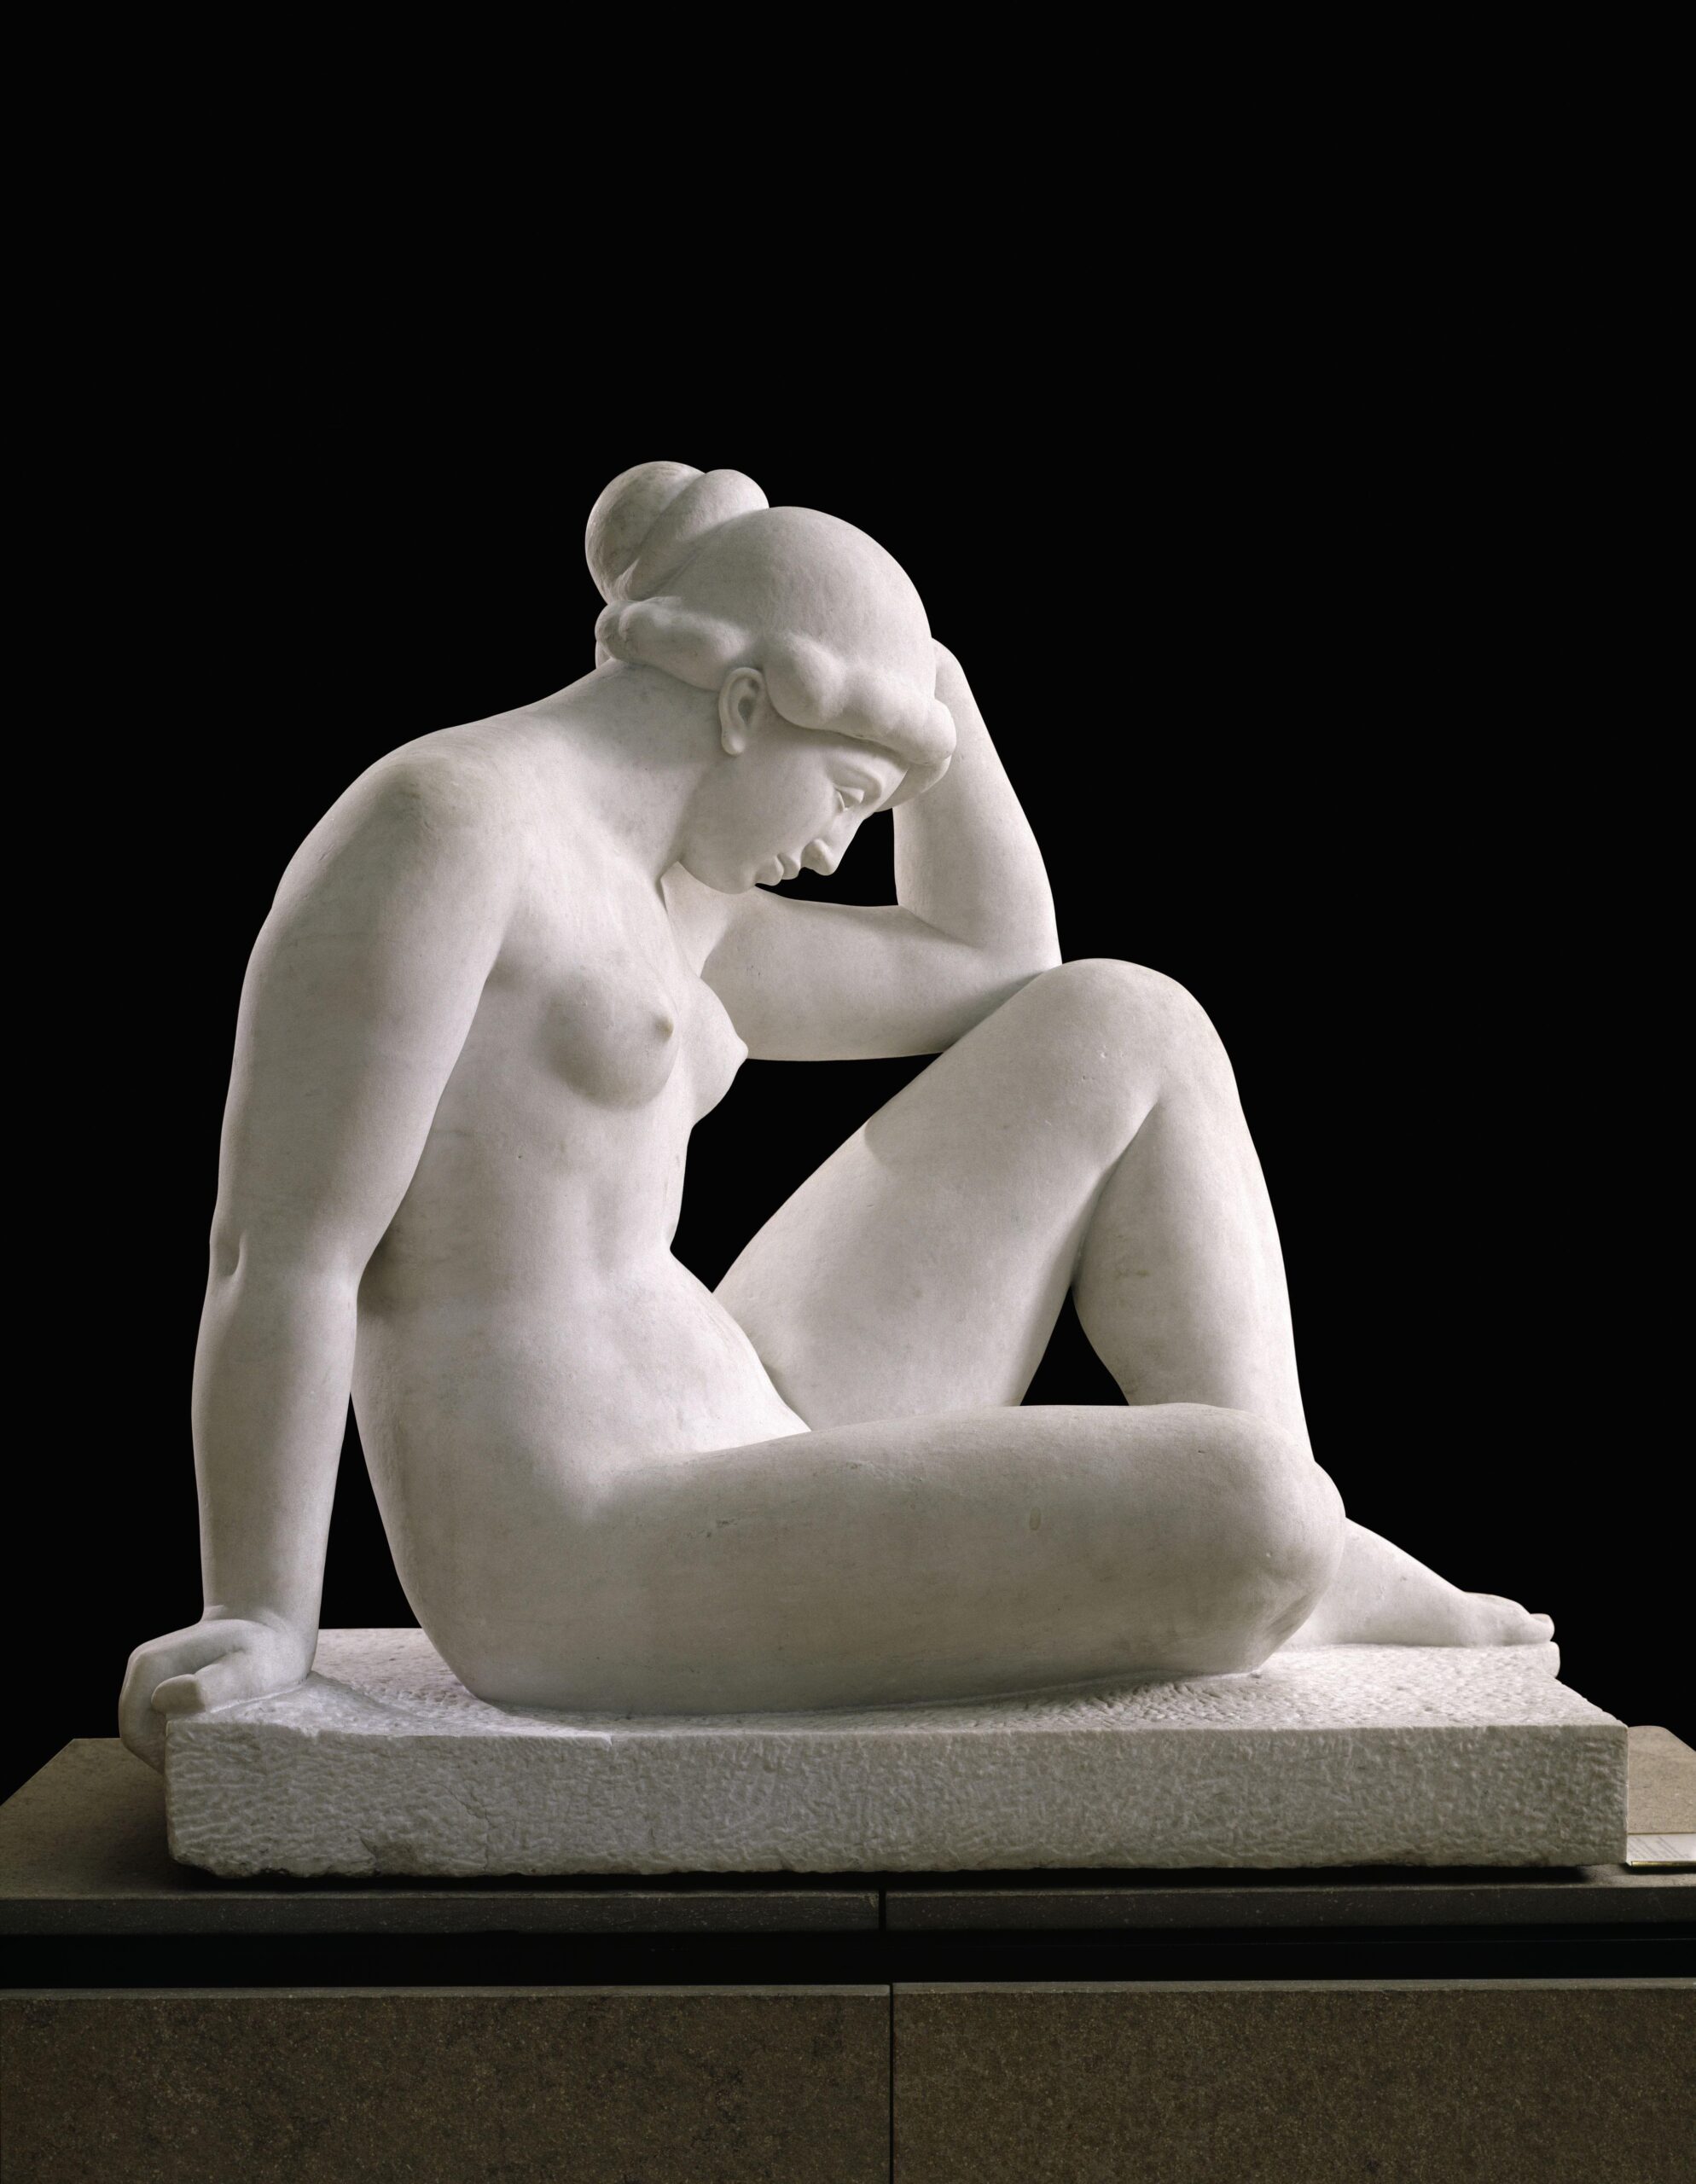 Aristide Maillol (1861-1944), Méditerranée, 1905 (modèle en plâtre), 1923-27 (marbre). Marbre, 110,5 x 117,5 x 68,5 cm. Paris, musée d’Orsay. Photo service de presse. © RMN (musée d’Orsay) – T. Ollivier